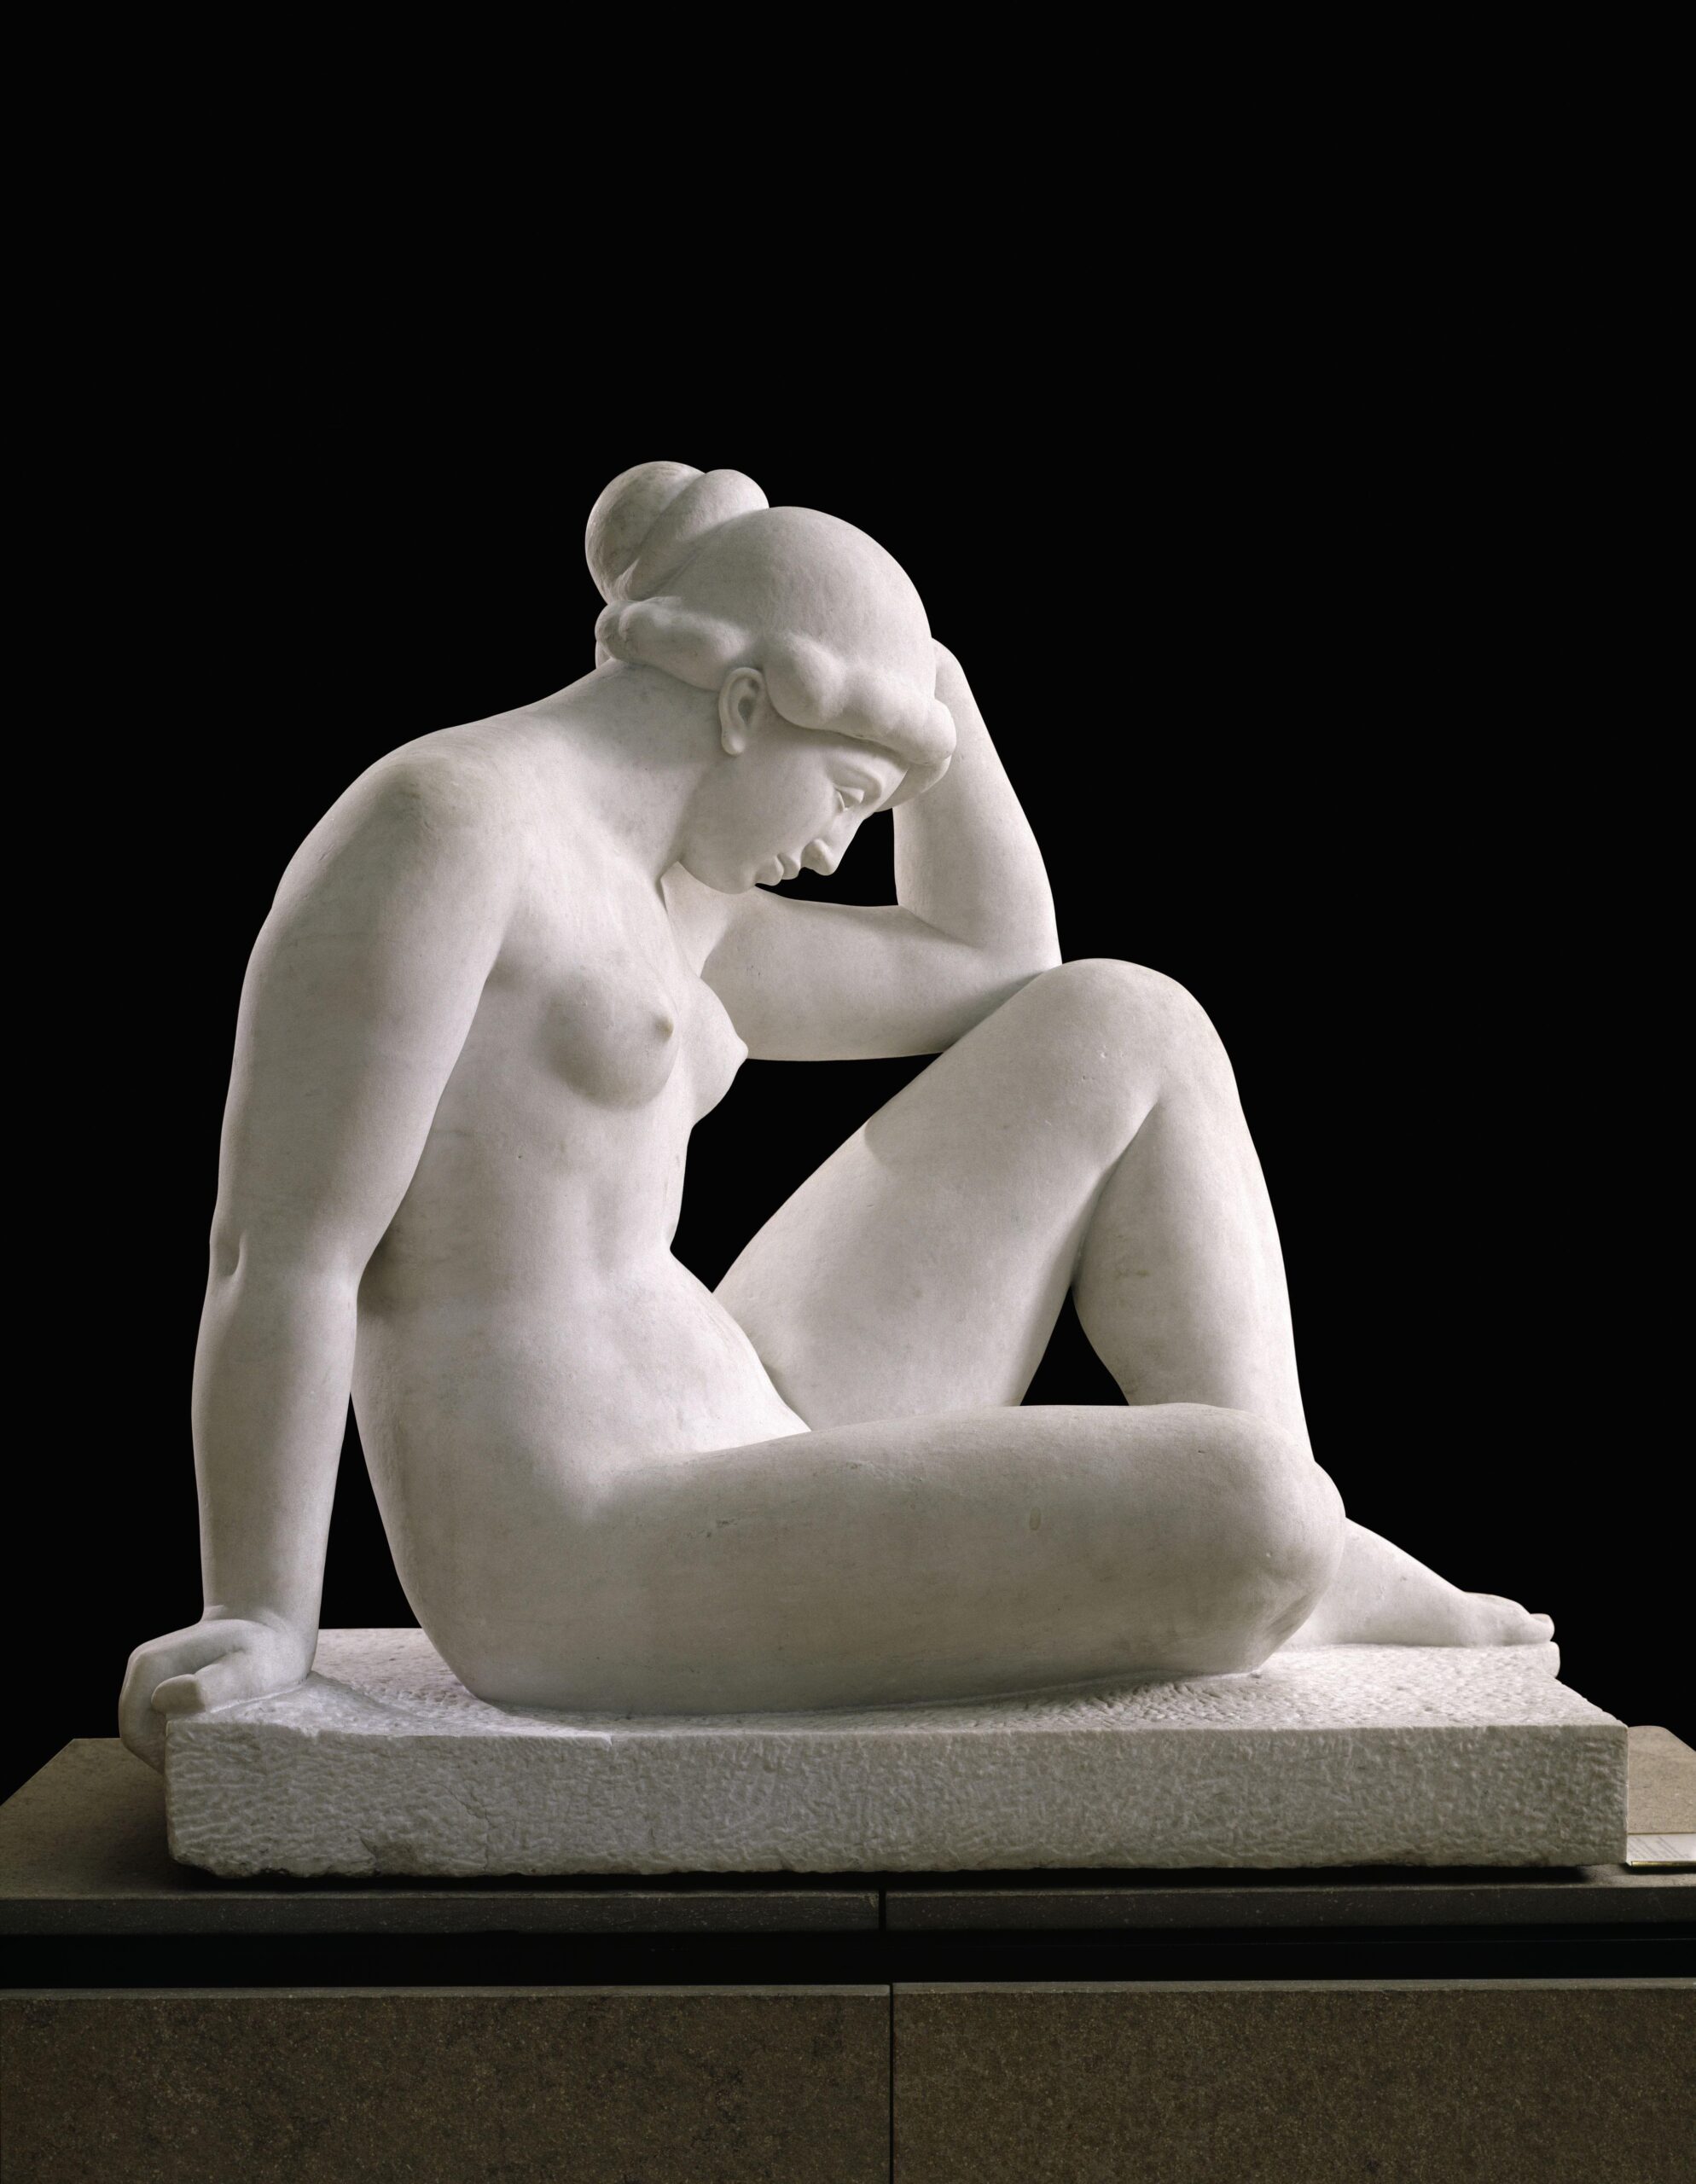 Aristide Maillol (1861-1944), Méditerranée, 1905 (modèle en plâtre), 1923-27 (marbre). Marbre, 110,5 x 117,5 x 68,5 cm. Paris, musée d’Orsay. Photo service de presse. © RMN (musée d’Orsay) – T. Ollivier